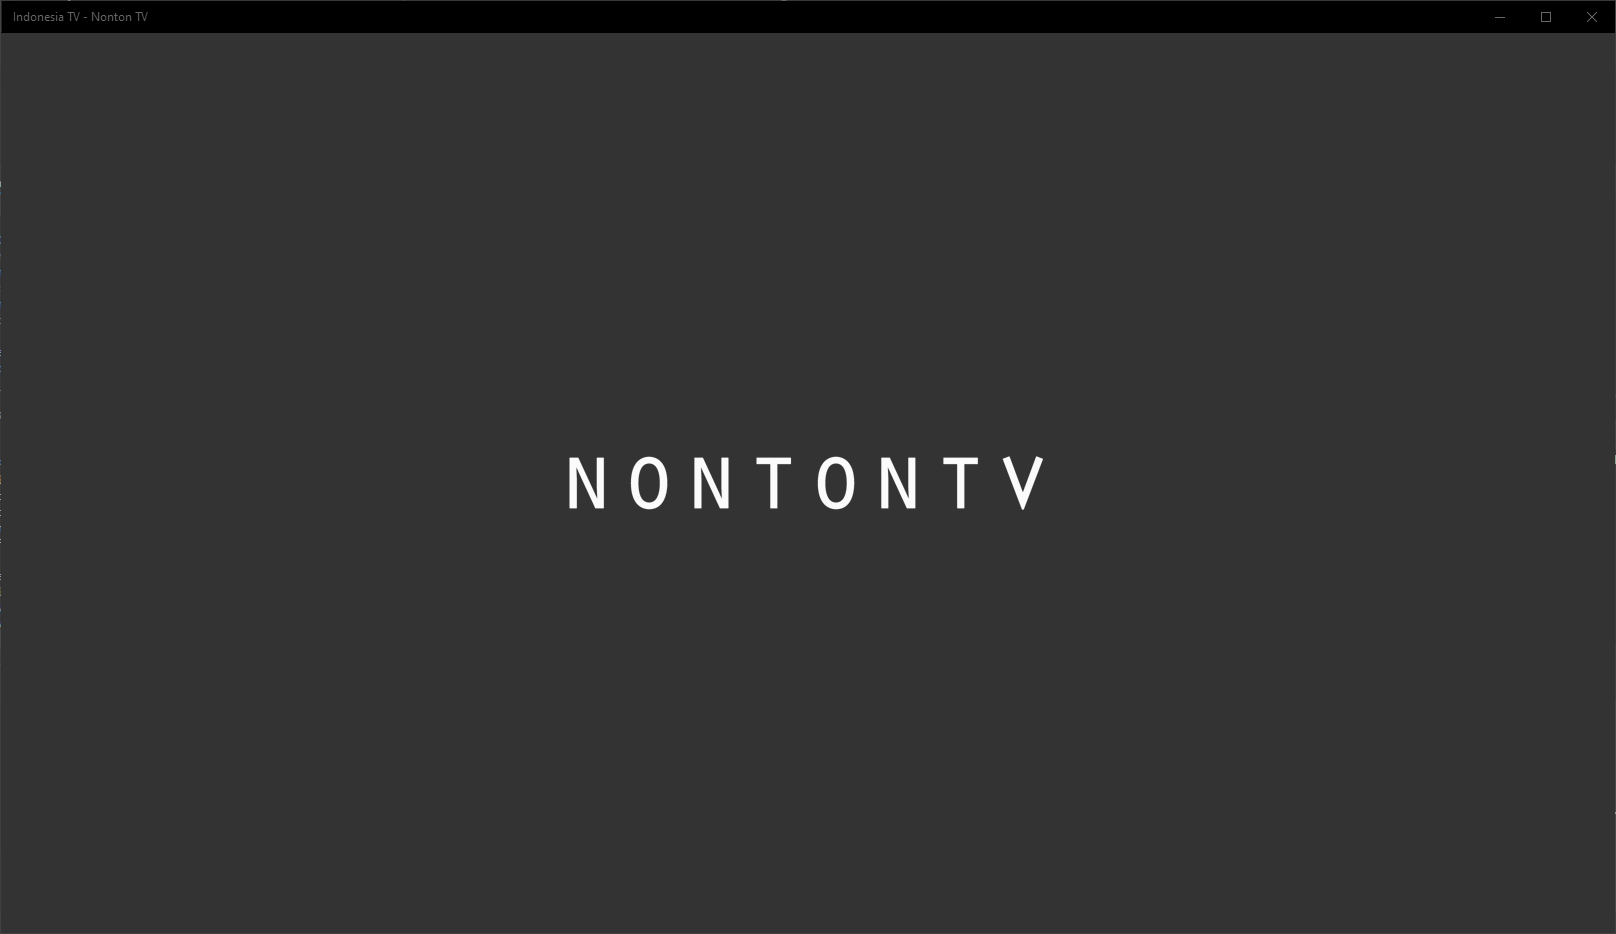 Indonesia TV - Nonton TV